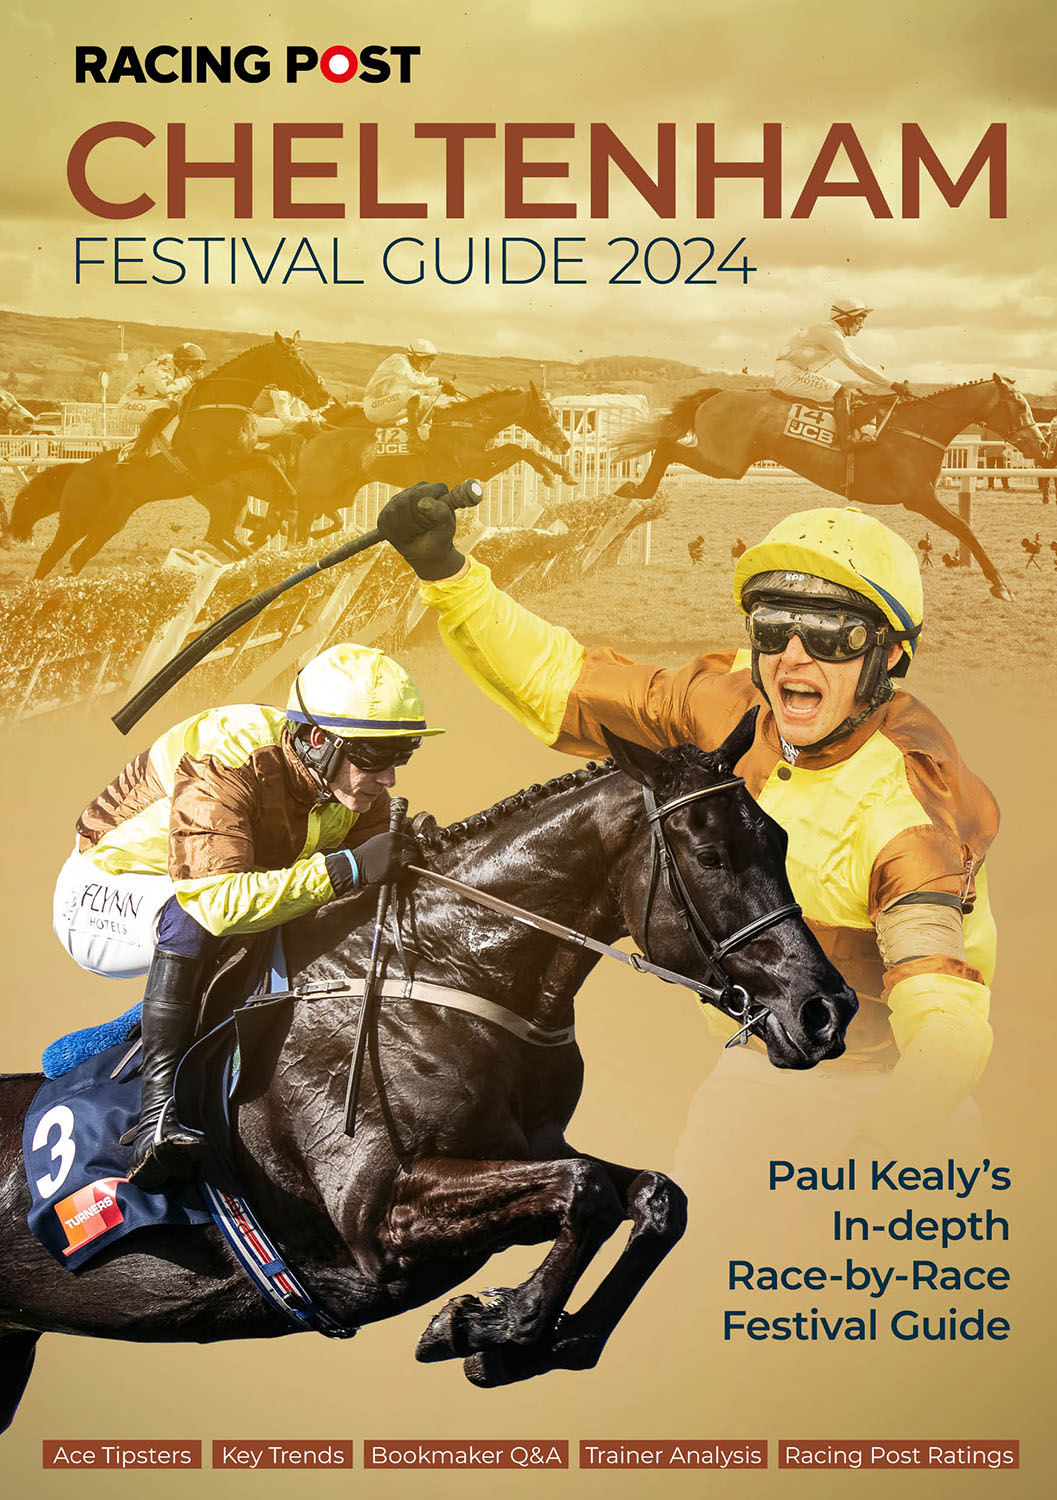 Racing Post Cheltenham Festival Guide 2024